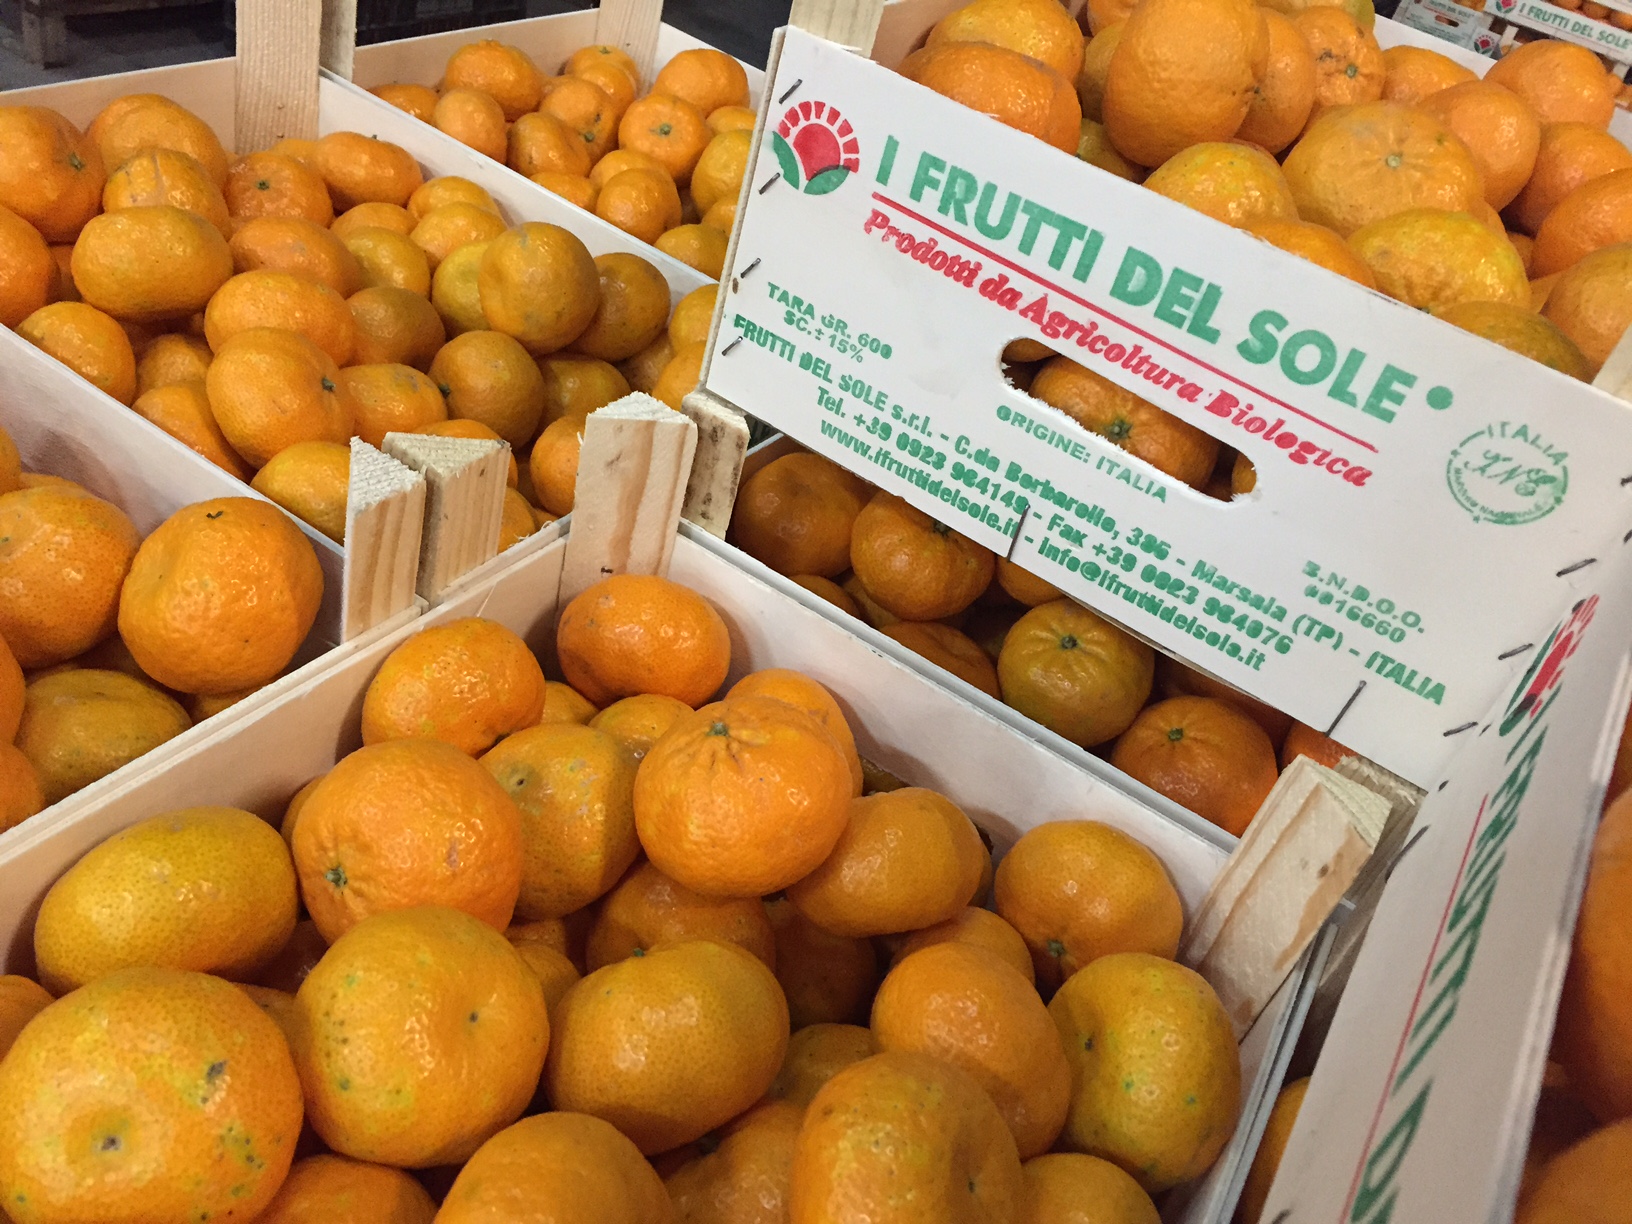 Il mandarino tardivo di Ciaculli, una specialità I Frutti del Sole